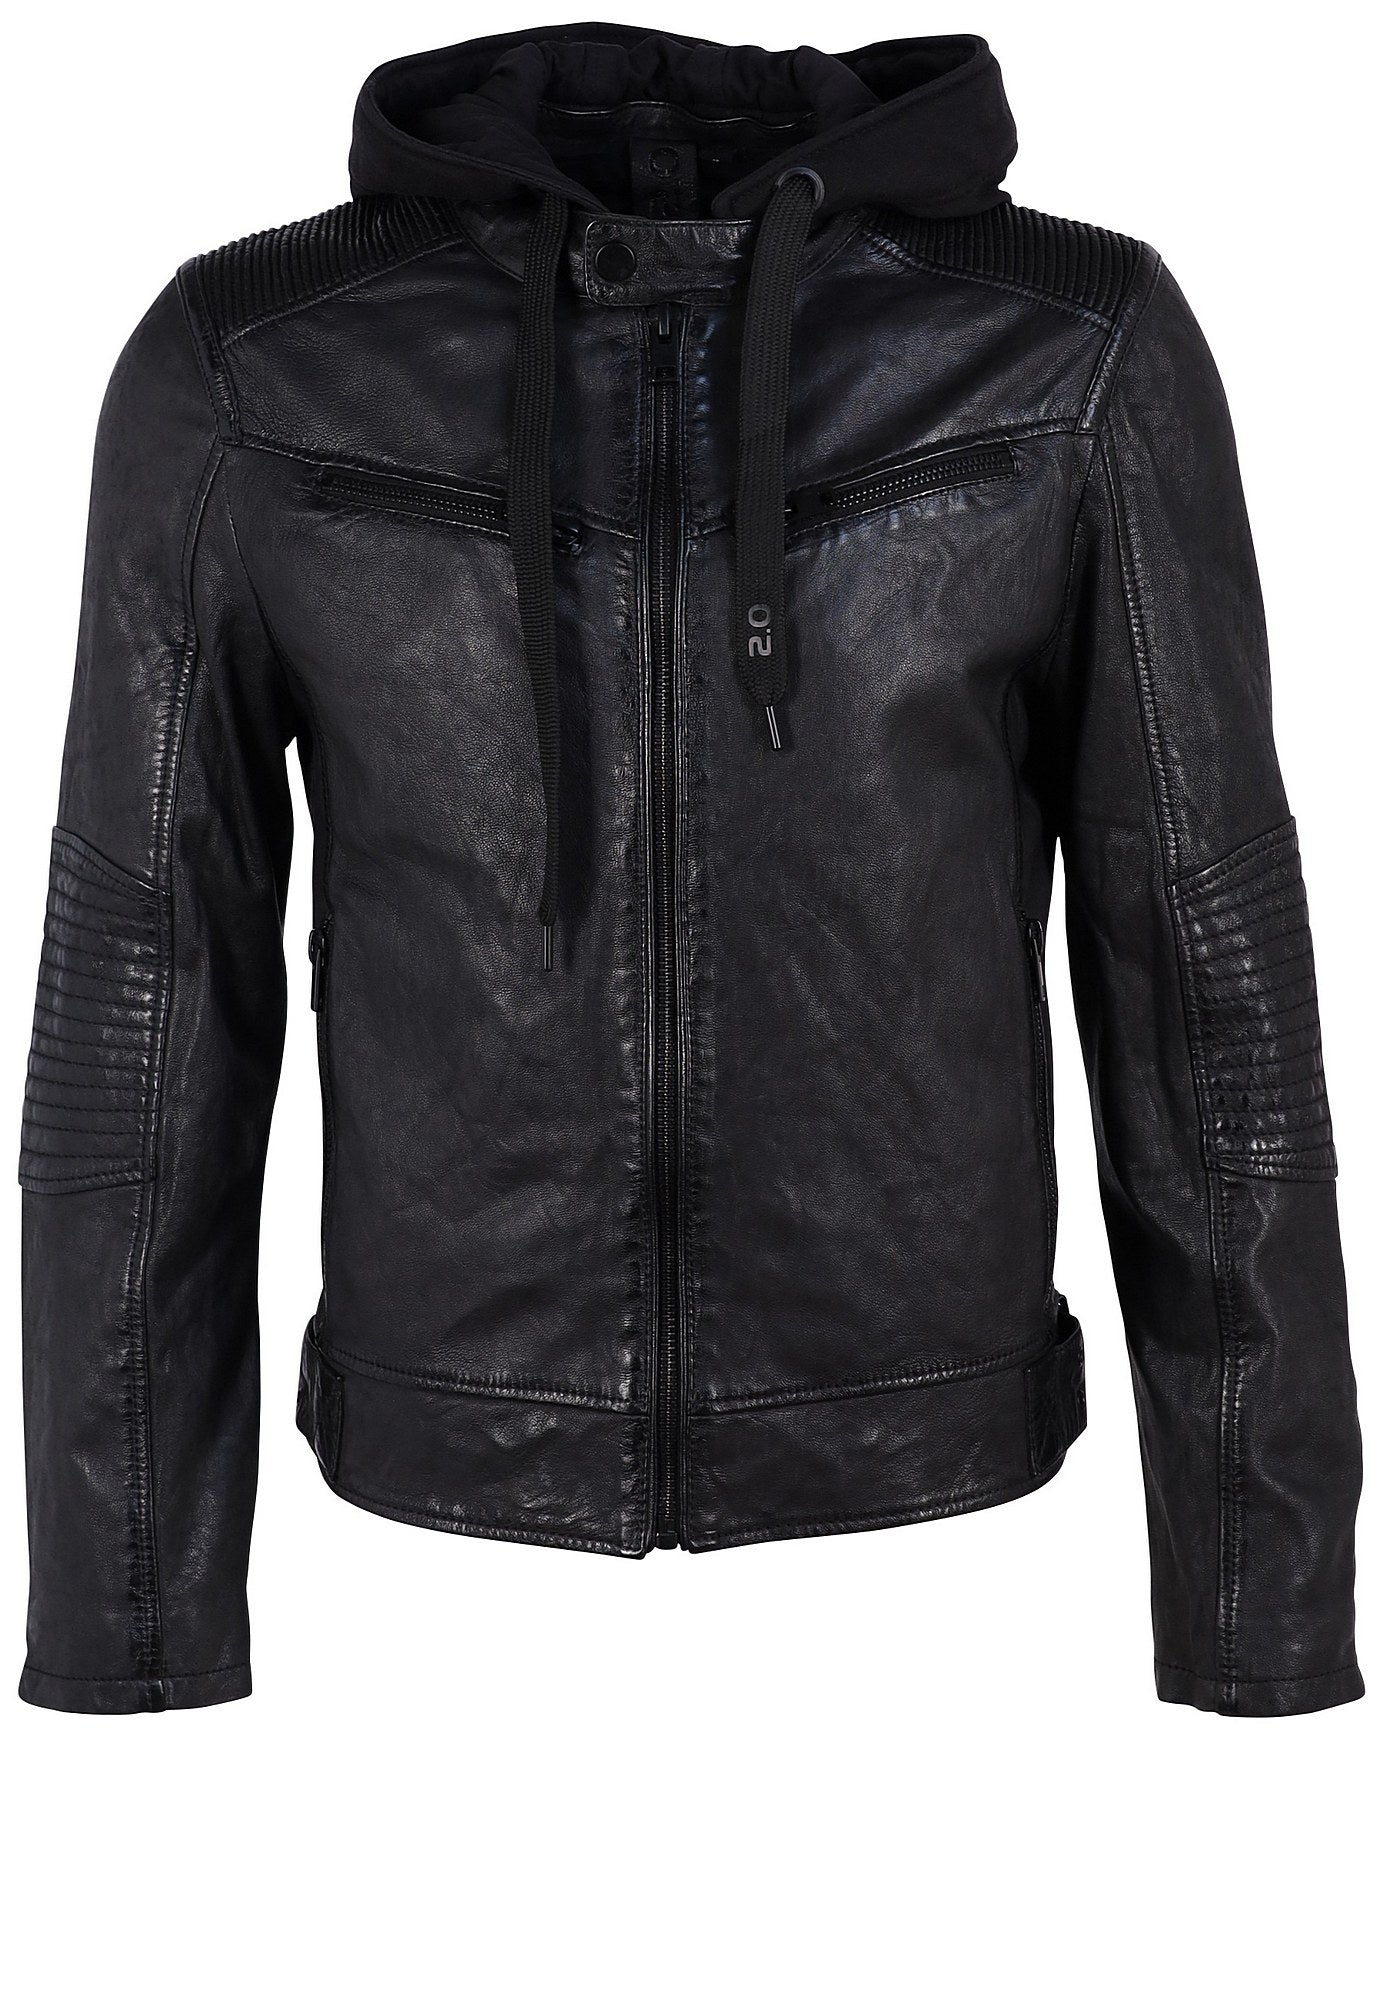 Kayto RF Leather Jacket, Black – mauritiusleather